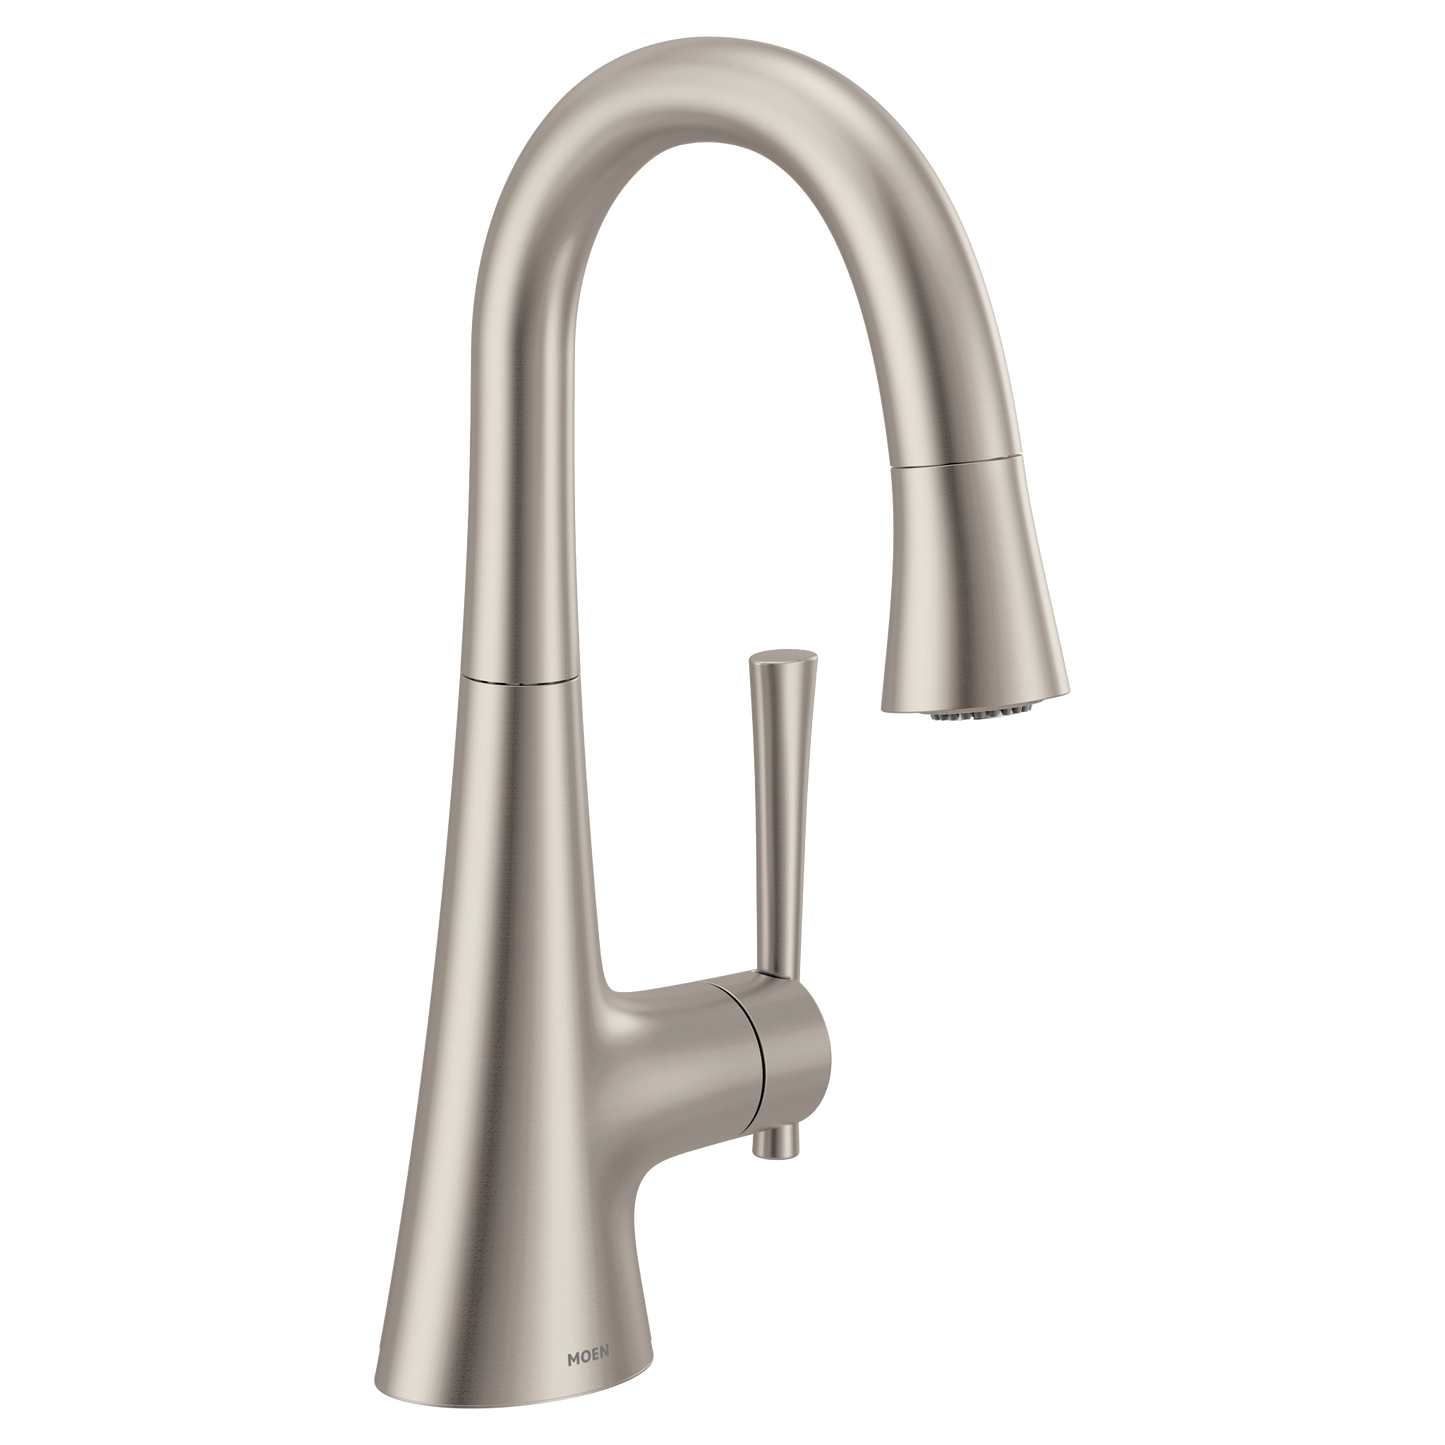 Kurv Chrome one-handle high arc bar faucet